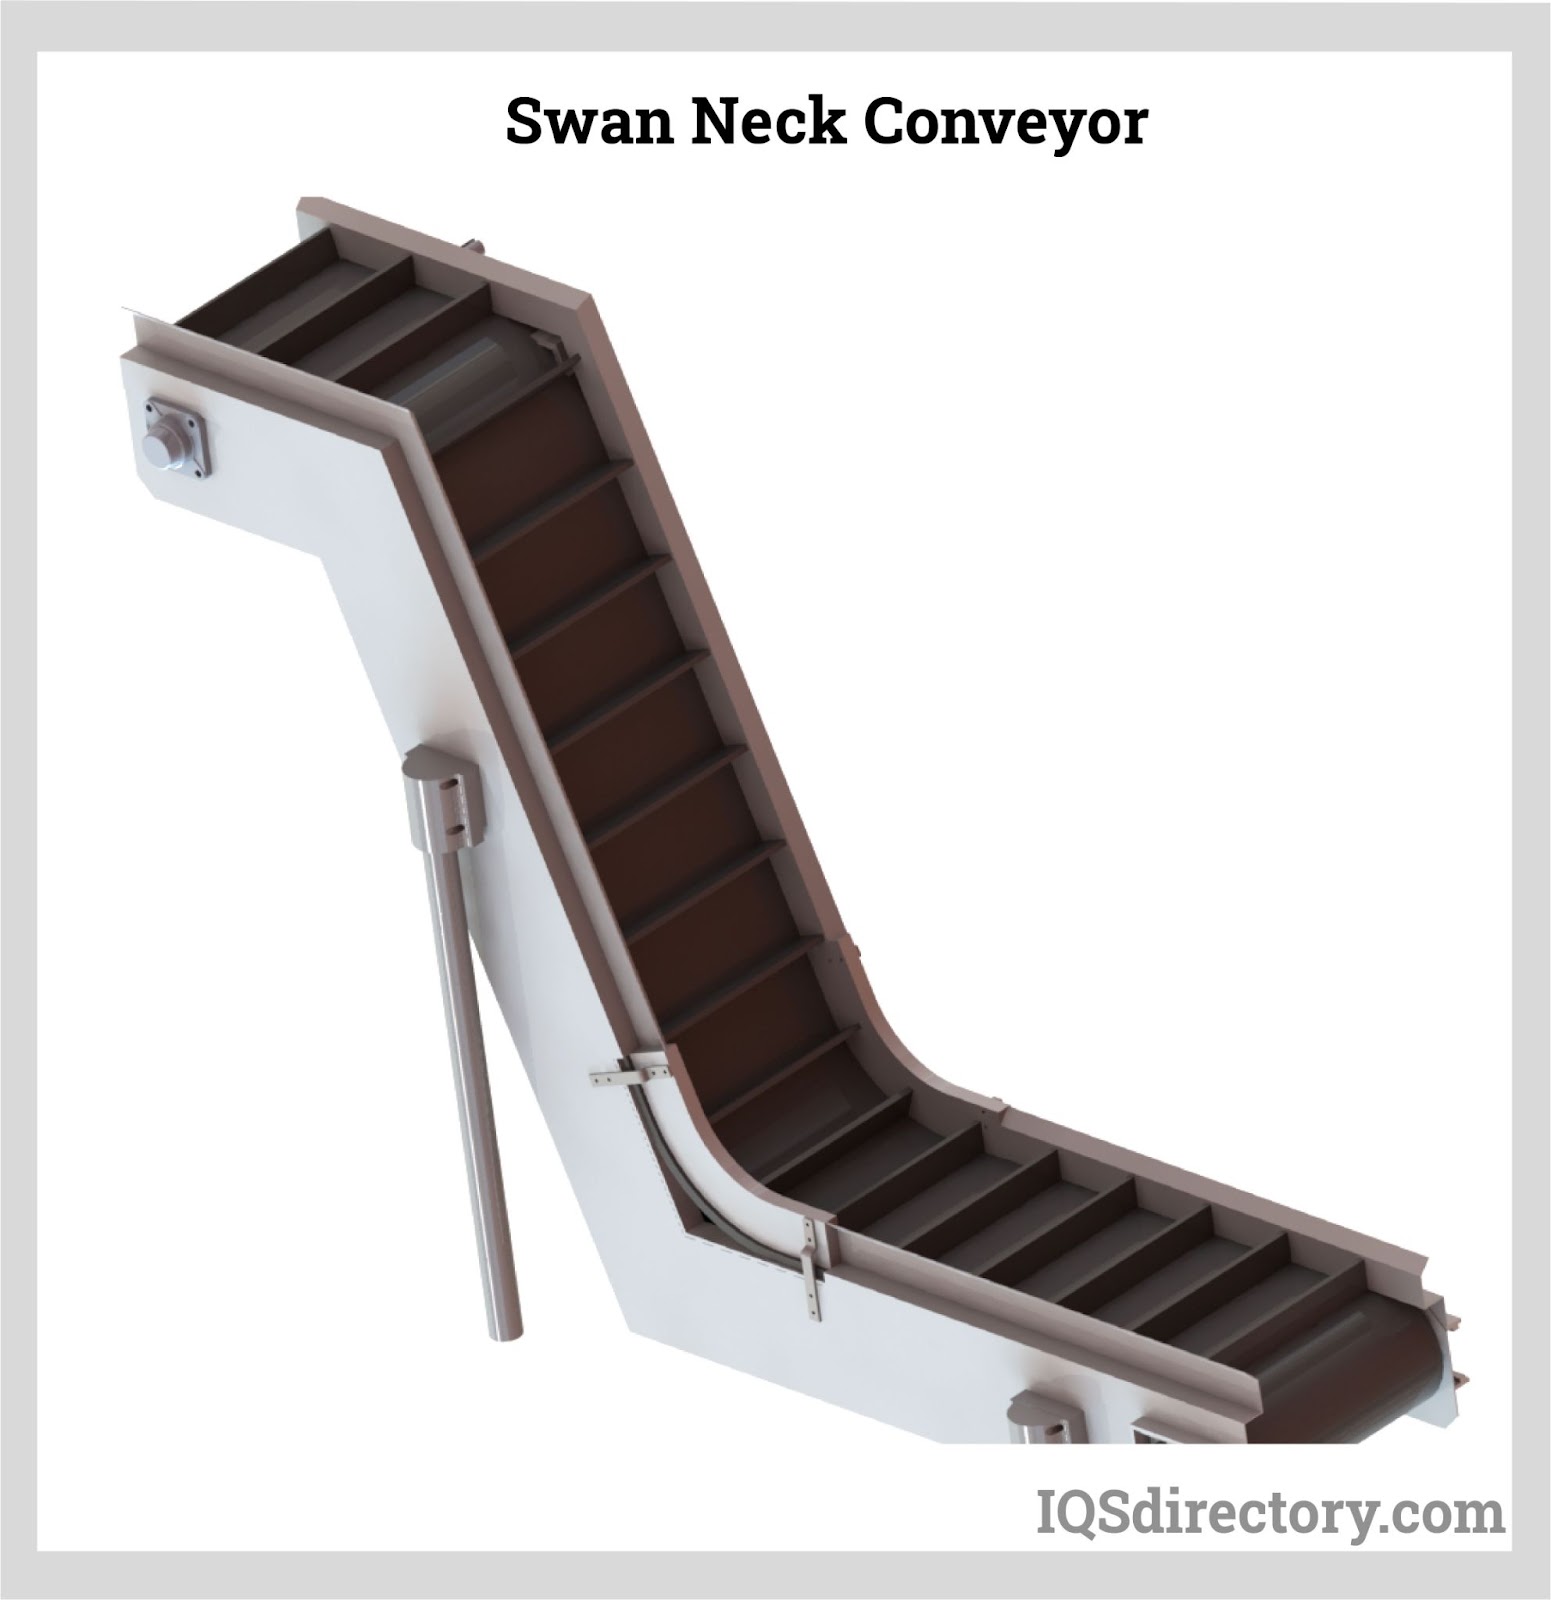 Swan Neck Conveyor